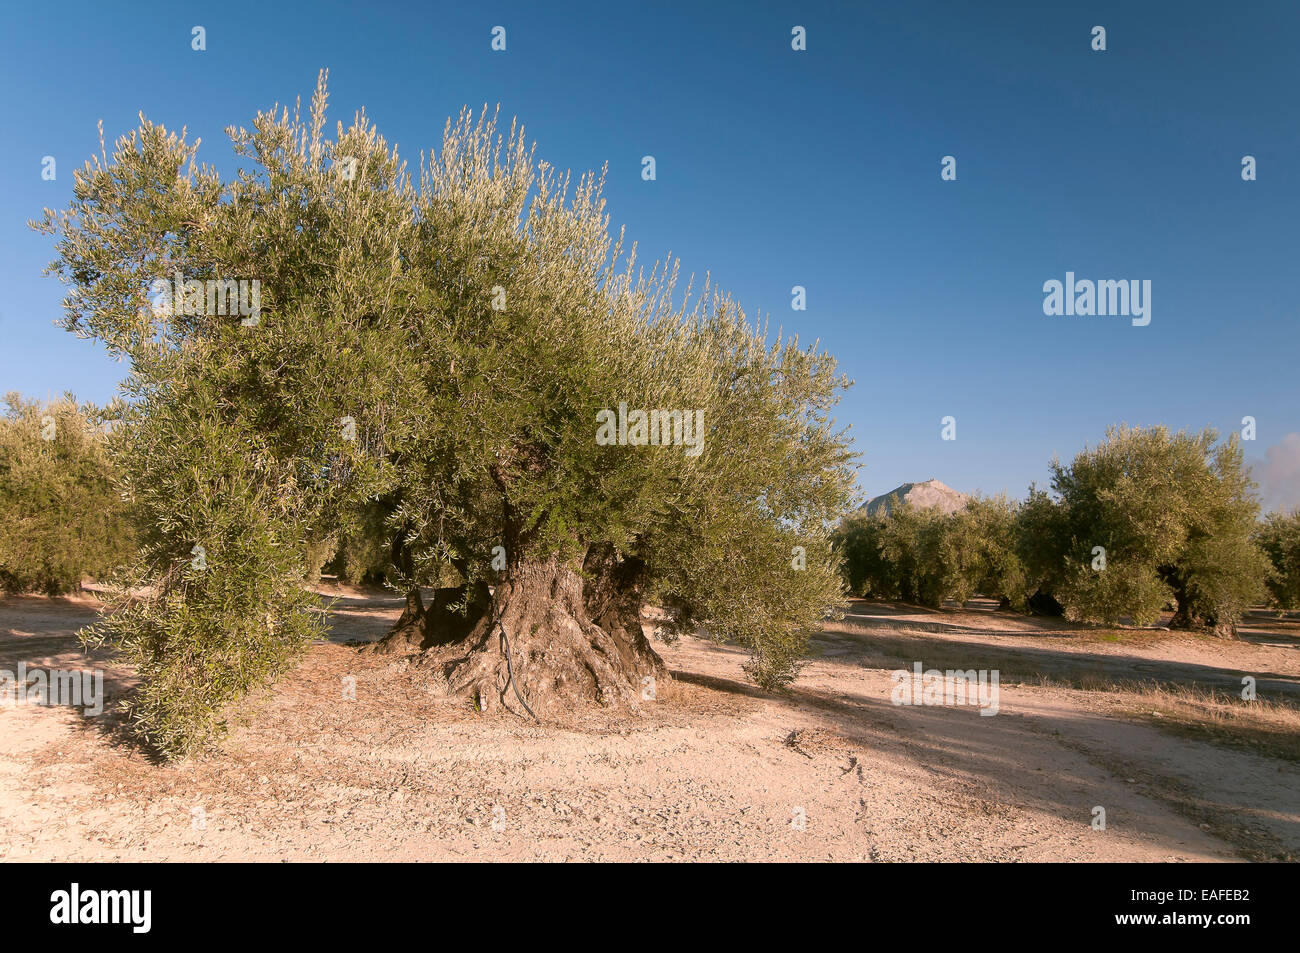 300 ans de vieux oliviers, Martos, Jaen province, région d'Andalousie, Espagne, Europe Banque D'Images